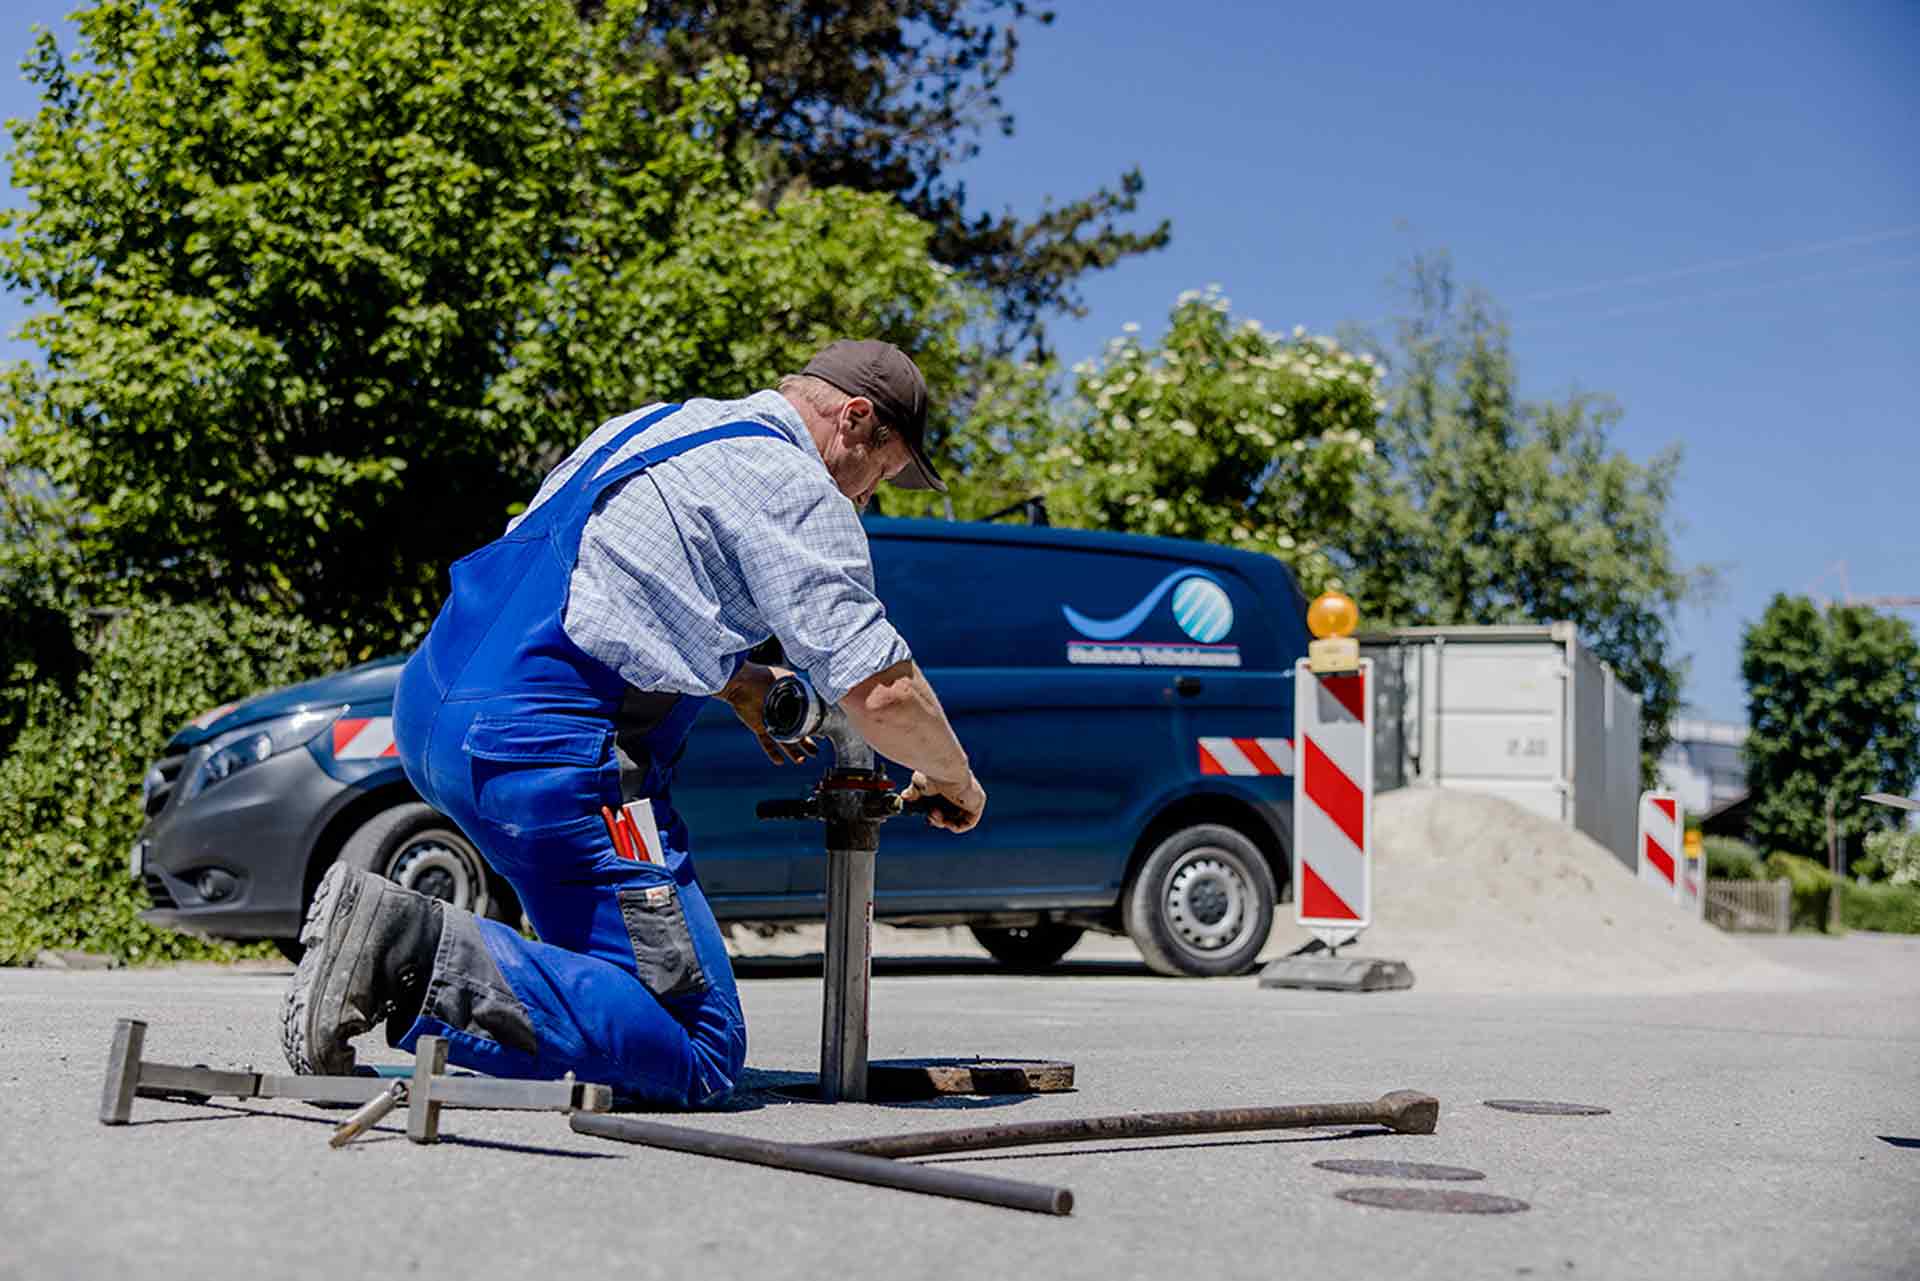 Mitarbeiter der Stadtwerke installiert eine Wasserleitung in einem Wasseranschluss auf der Straße